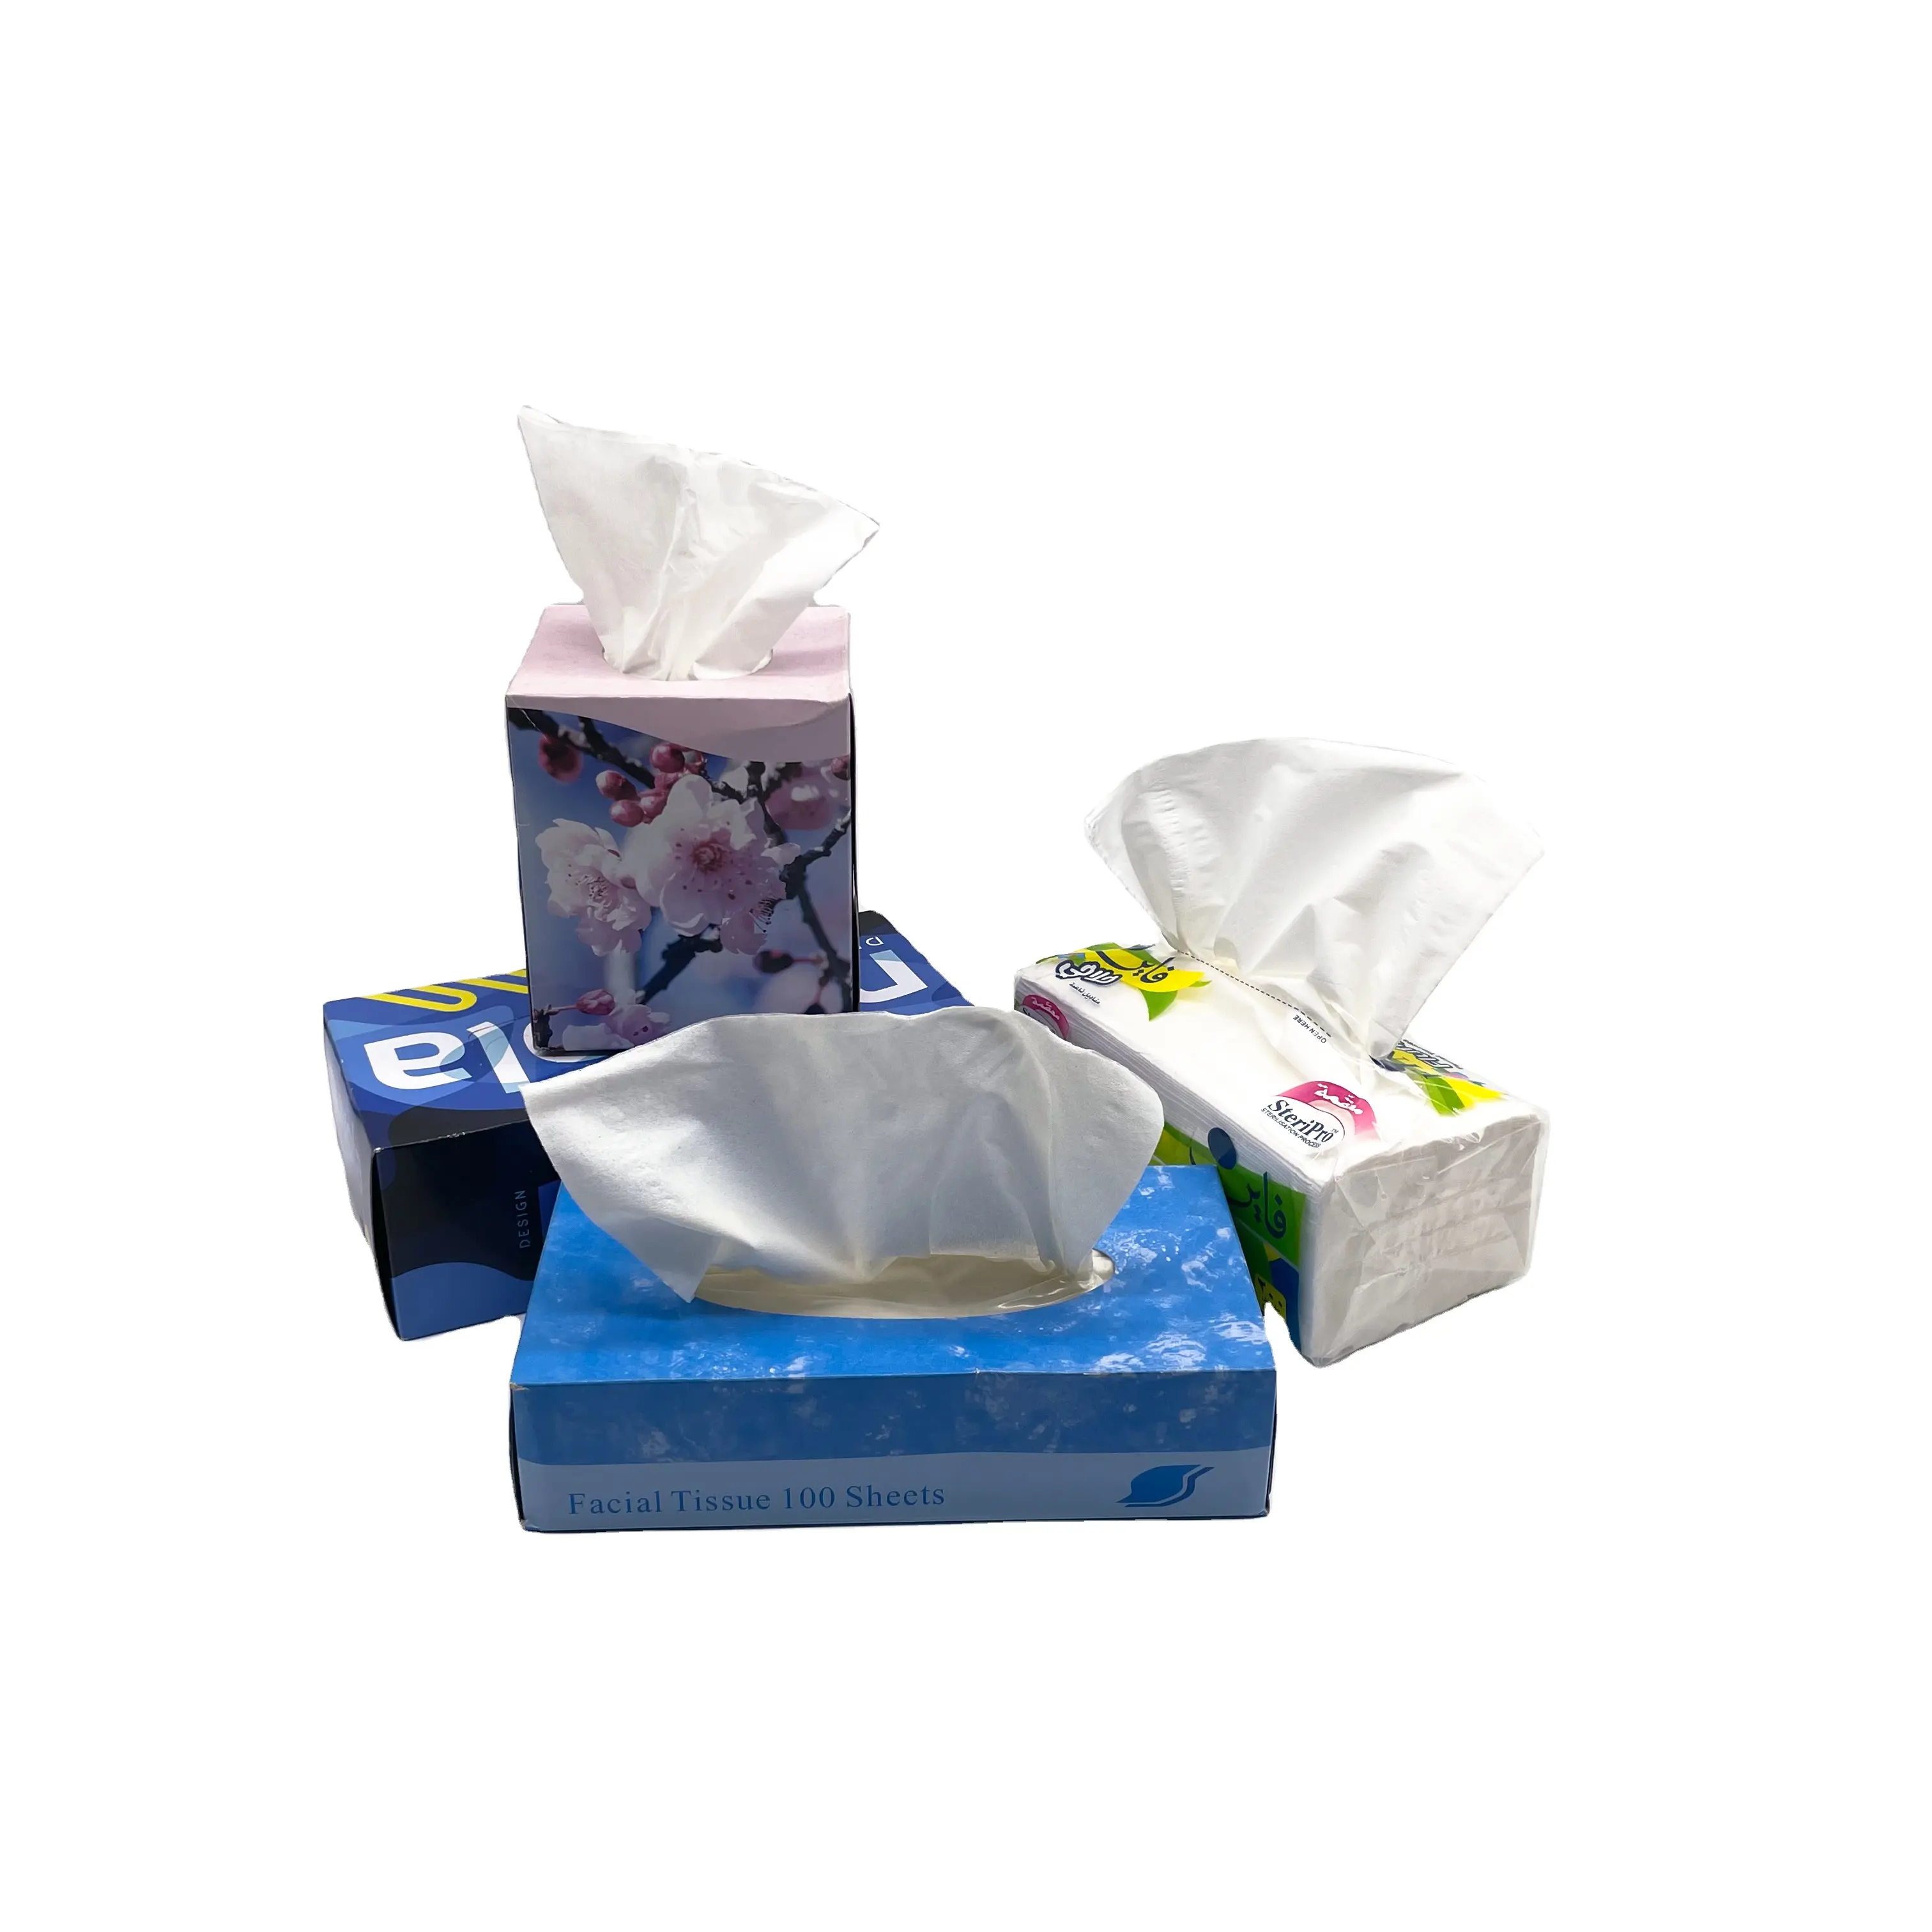 Fazzoletti Pepar fazzoletto di tessuto facciale Super morbido 3 strati di carta igienica piega turchia all'ingrosso strato di tessuto di fabbrica